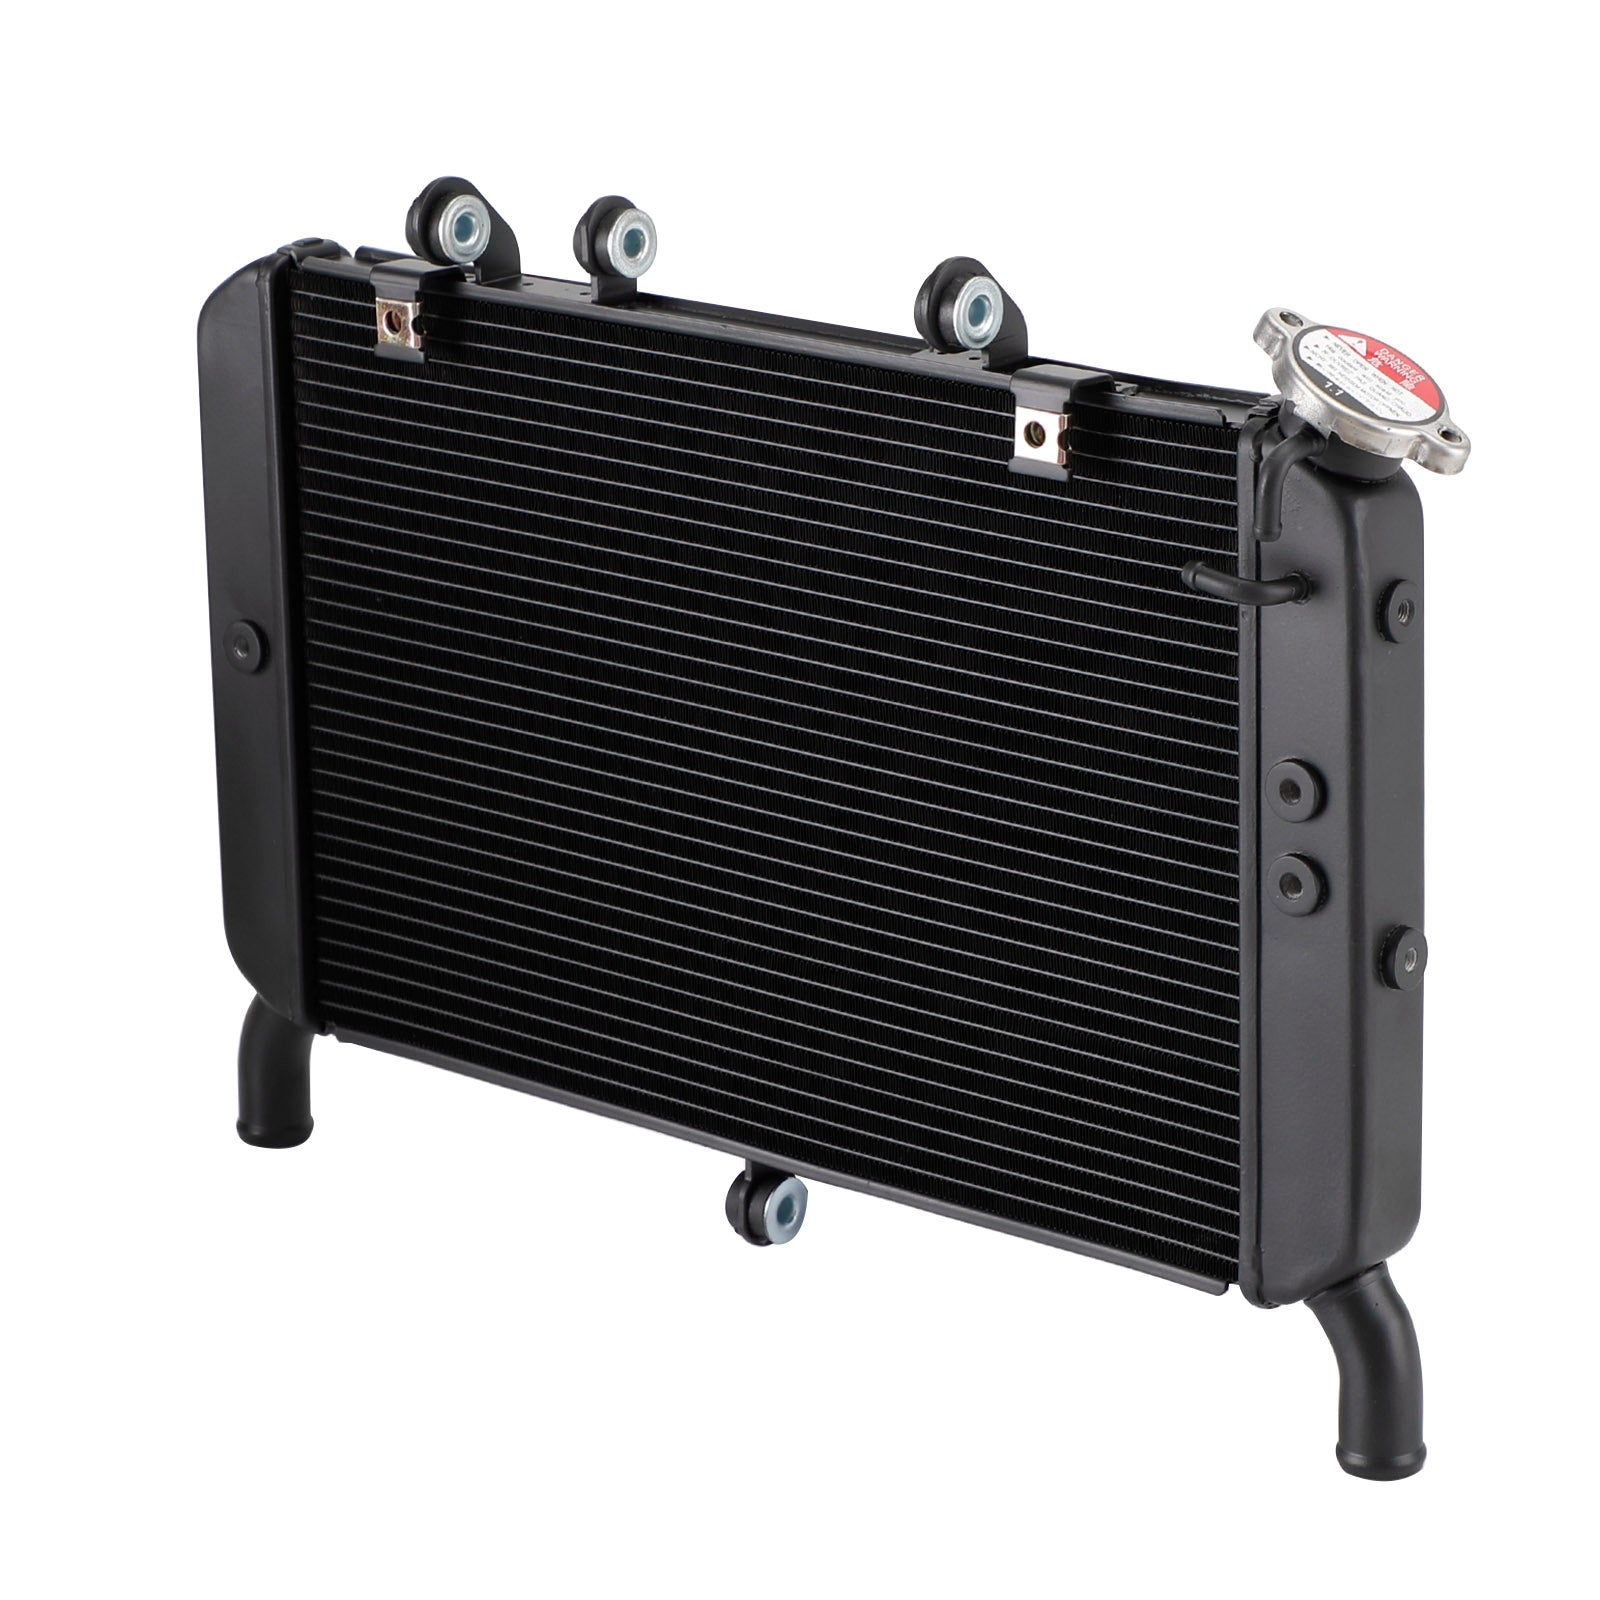 Refroidisseur de radiateur de refroidissement pour Yamaha FZ09 MT09 MT-09 2014-20 TRACER 900 19-20